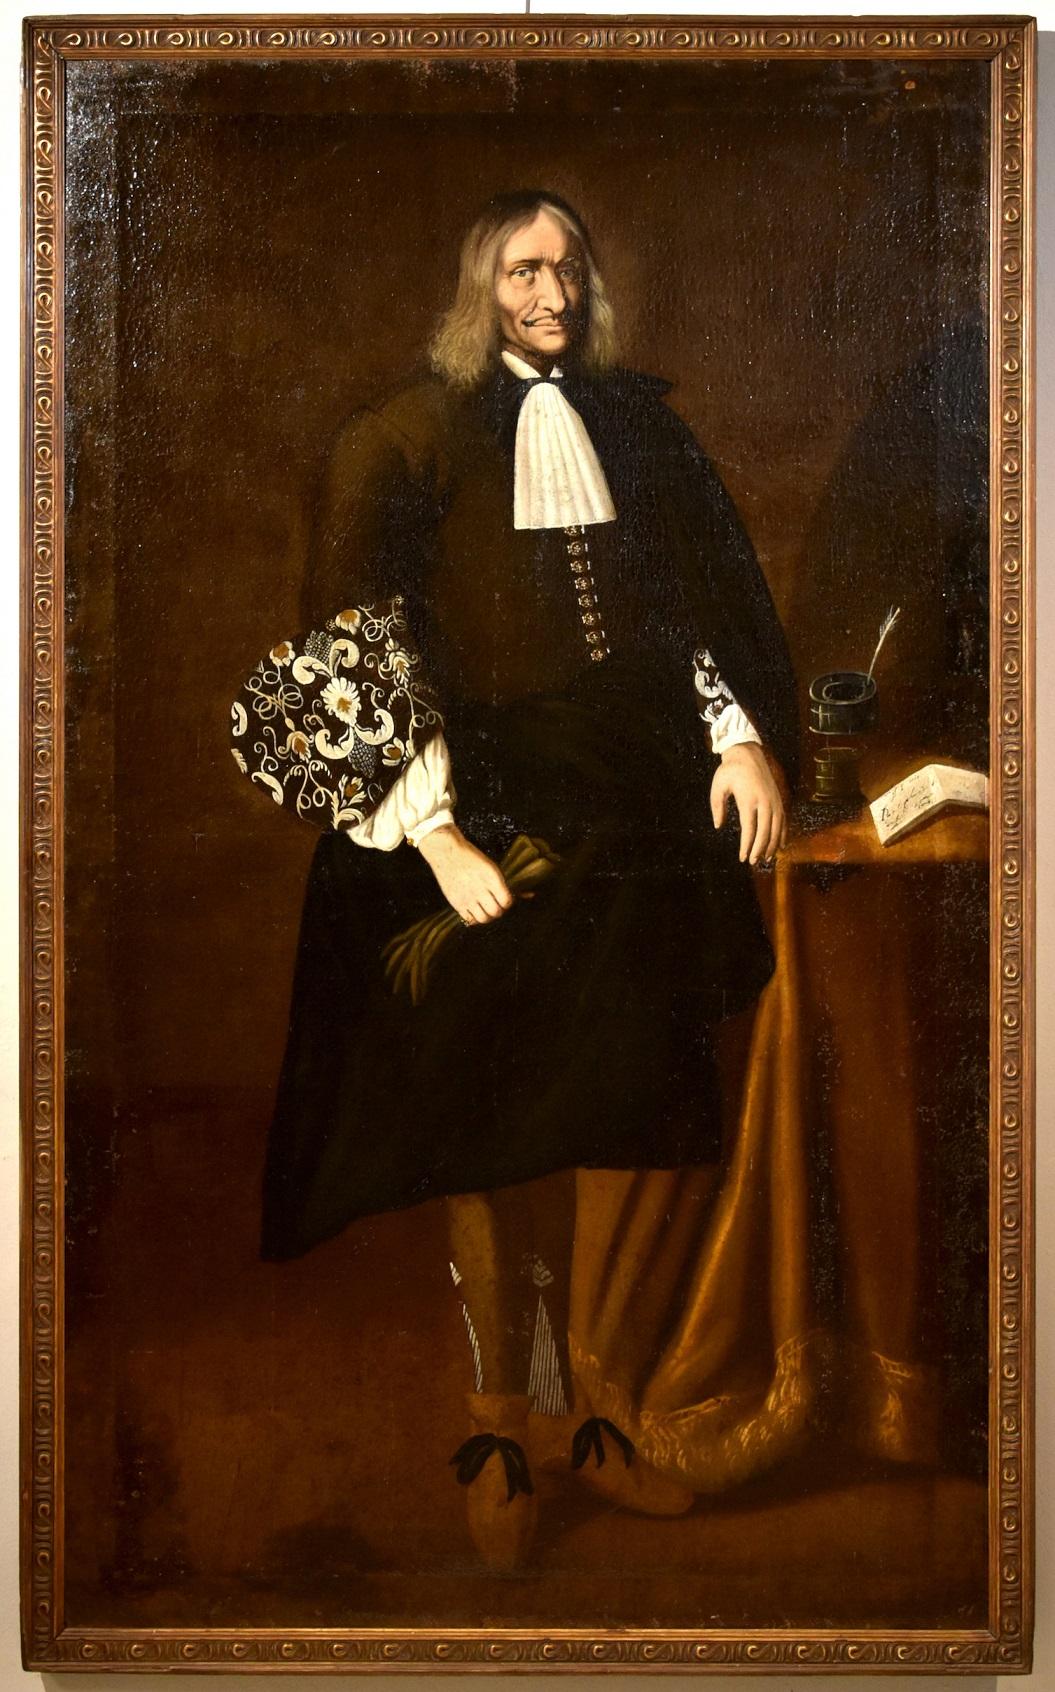 Portrait Painting Carlo Ceresa (San Giovanni Bianco 1609 - Bergamo 1679) - Portrait Homme Noble Ceresa Peinture Huile sur toile Vieux maître 17ème siècle Italie Art